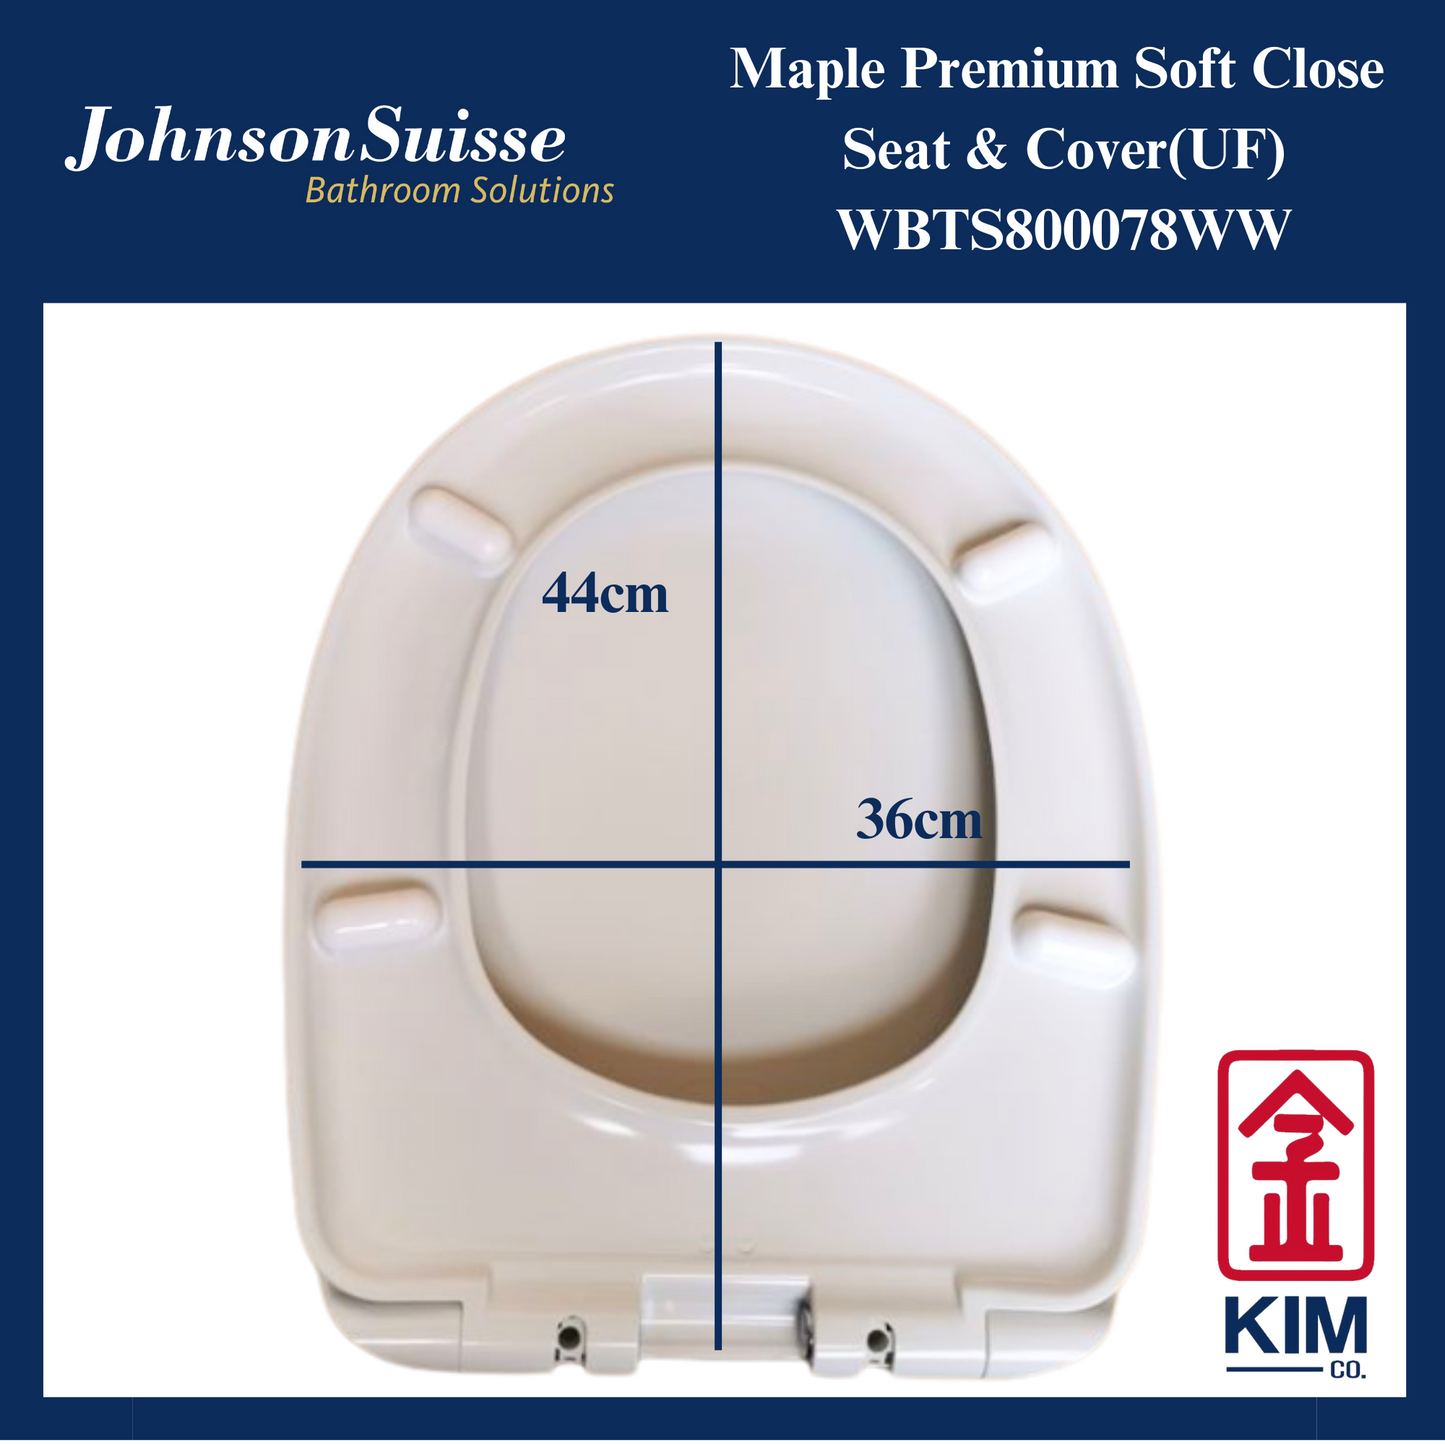 Johnson Suisse Maple Premium Soft Close Seat & Cover (UF)(WBTS800078WW)